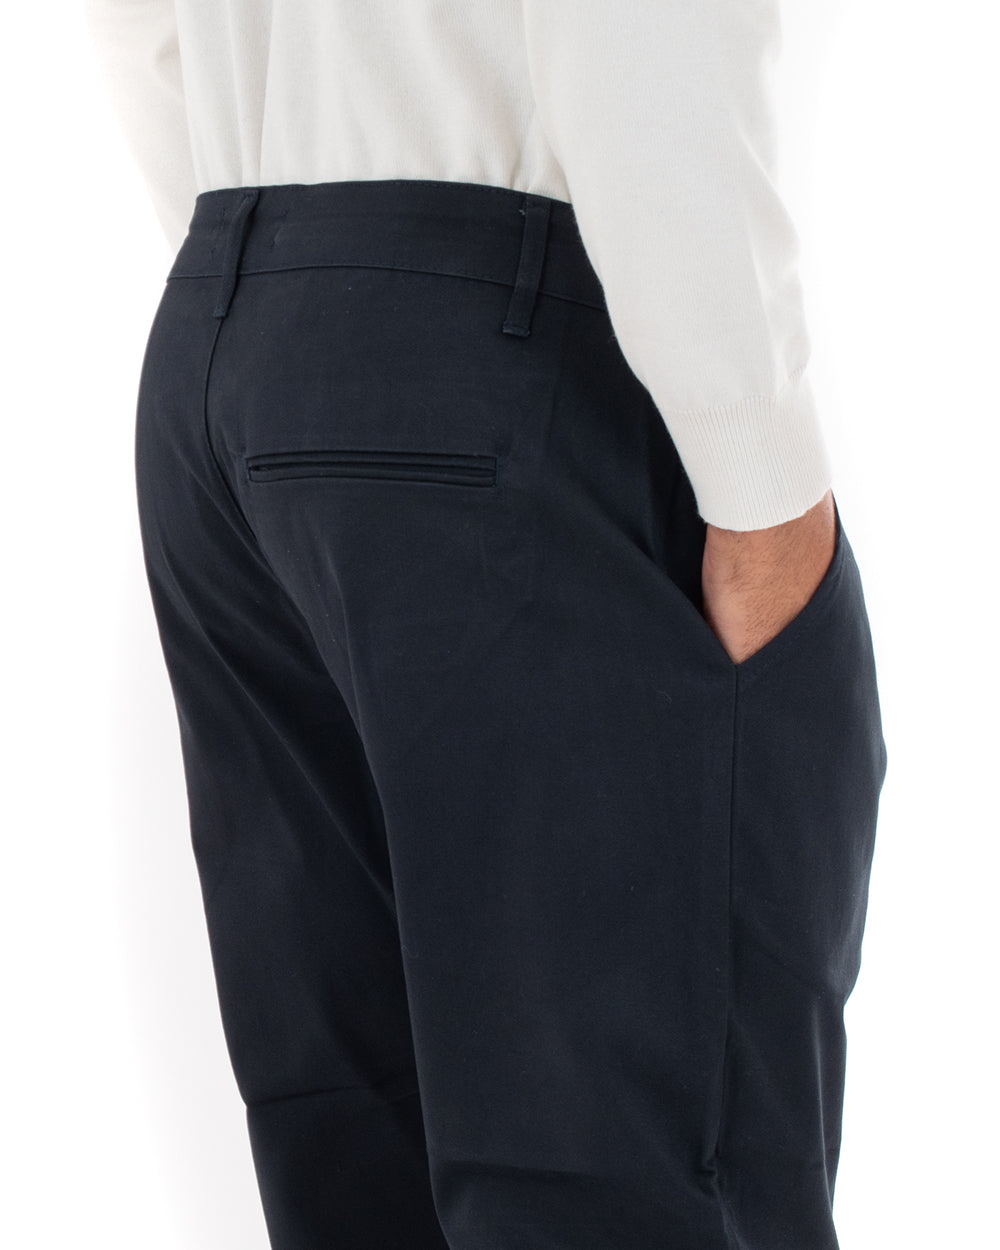 Pantaloni Uomo Abbottonatura Allungata Cotone Capri Tinta Unita Blu Casual GIOSAL-P5938A